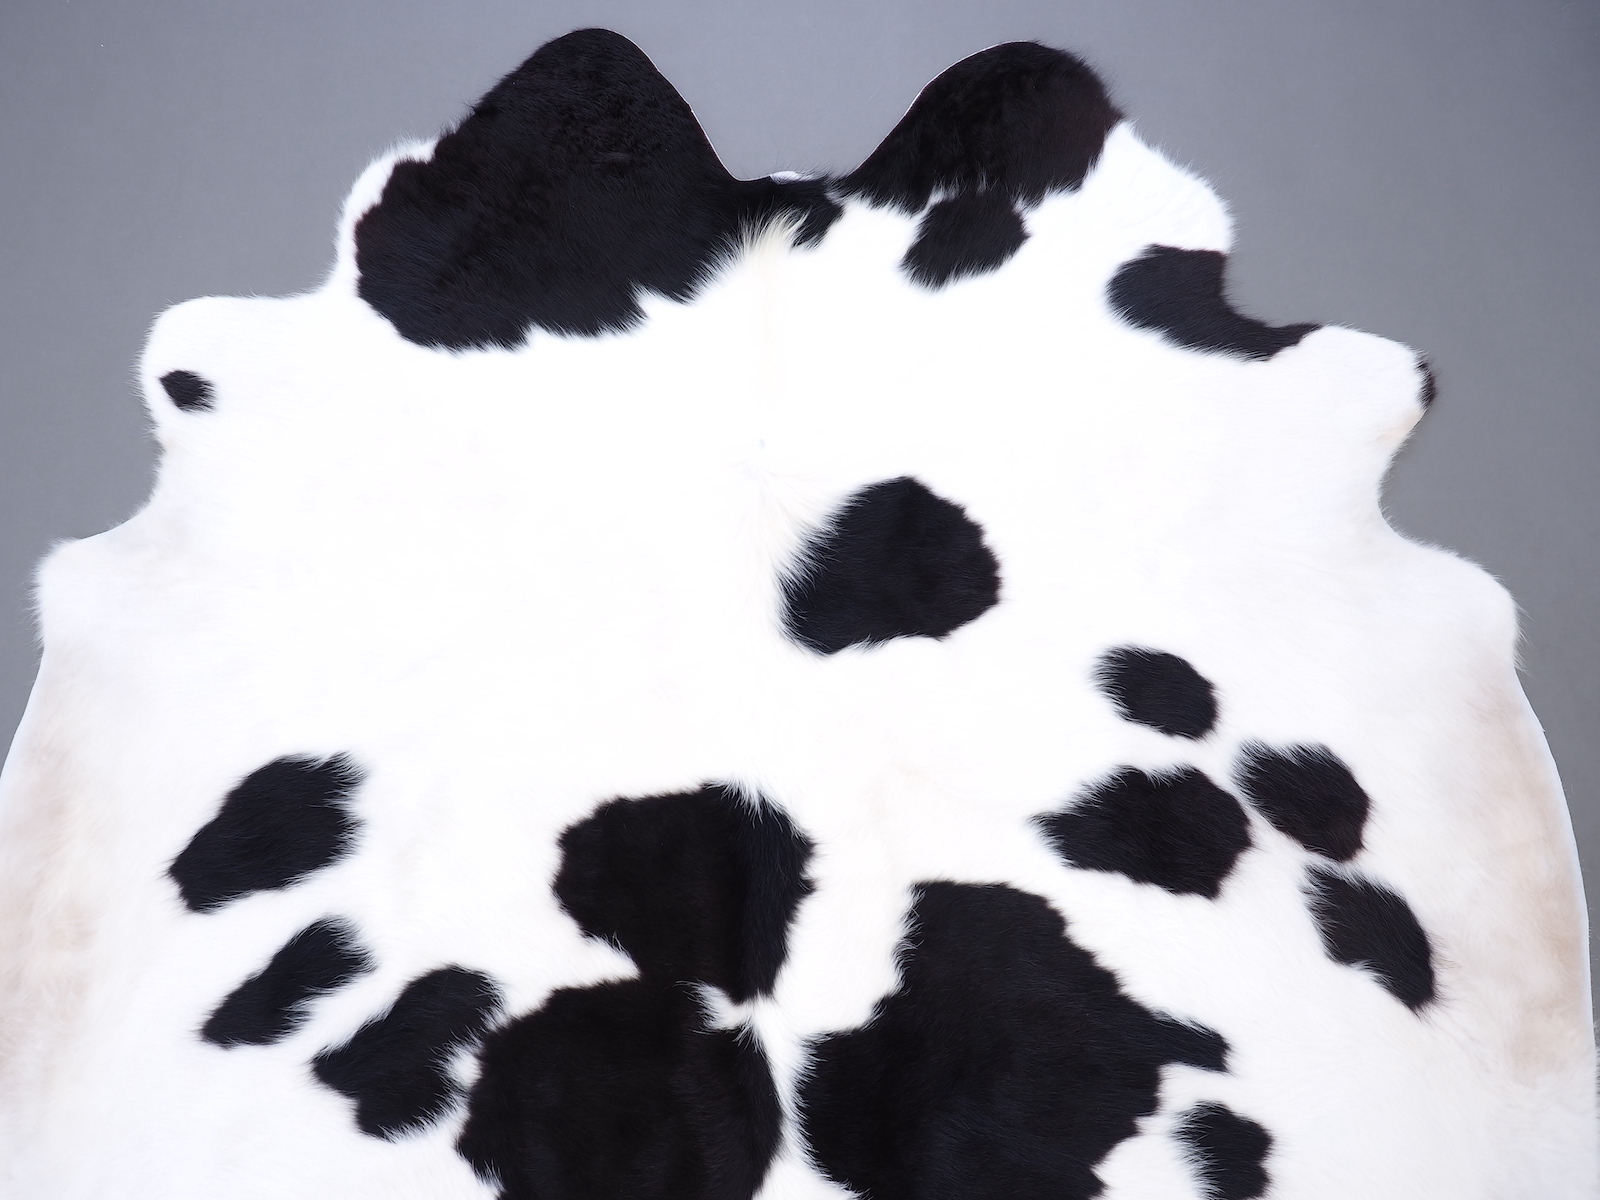 Ковер шкура коровы на пол черно-белая арт.: 30308 - p30308_1